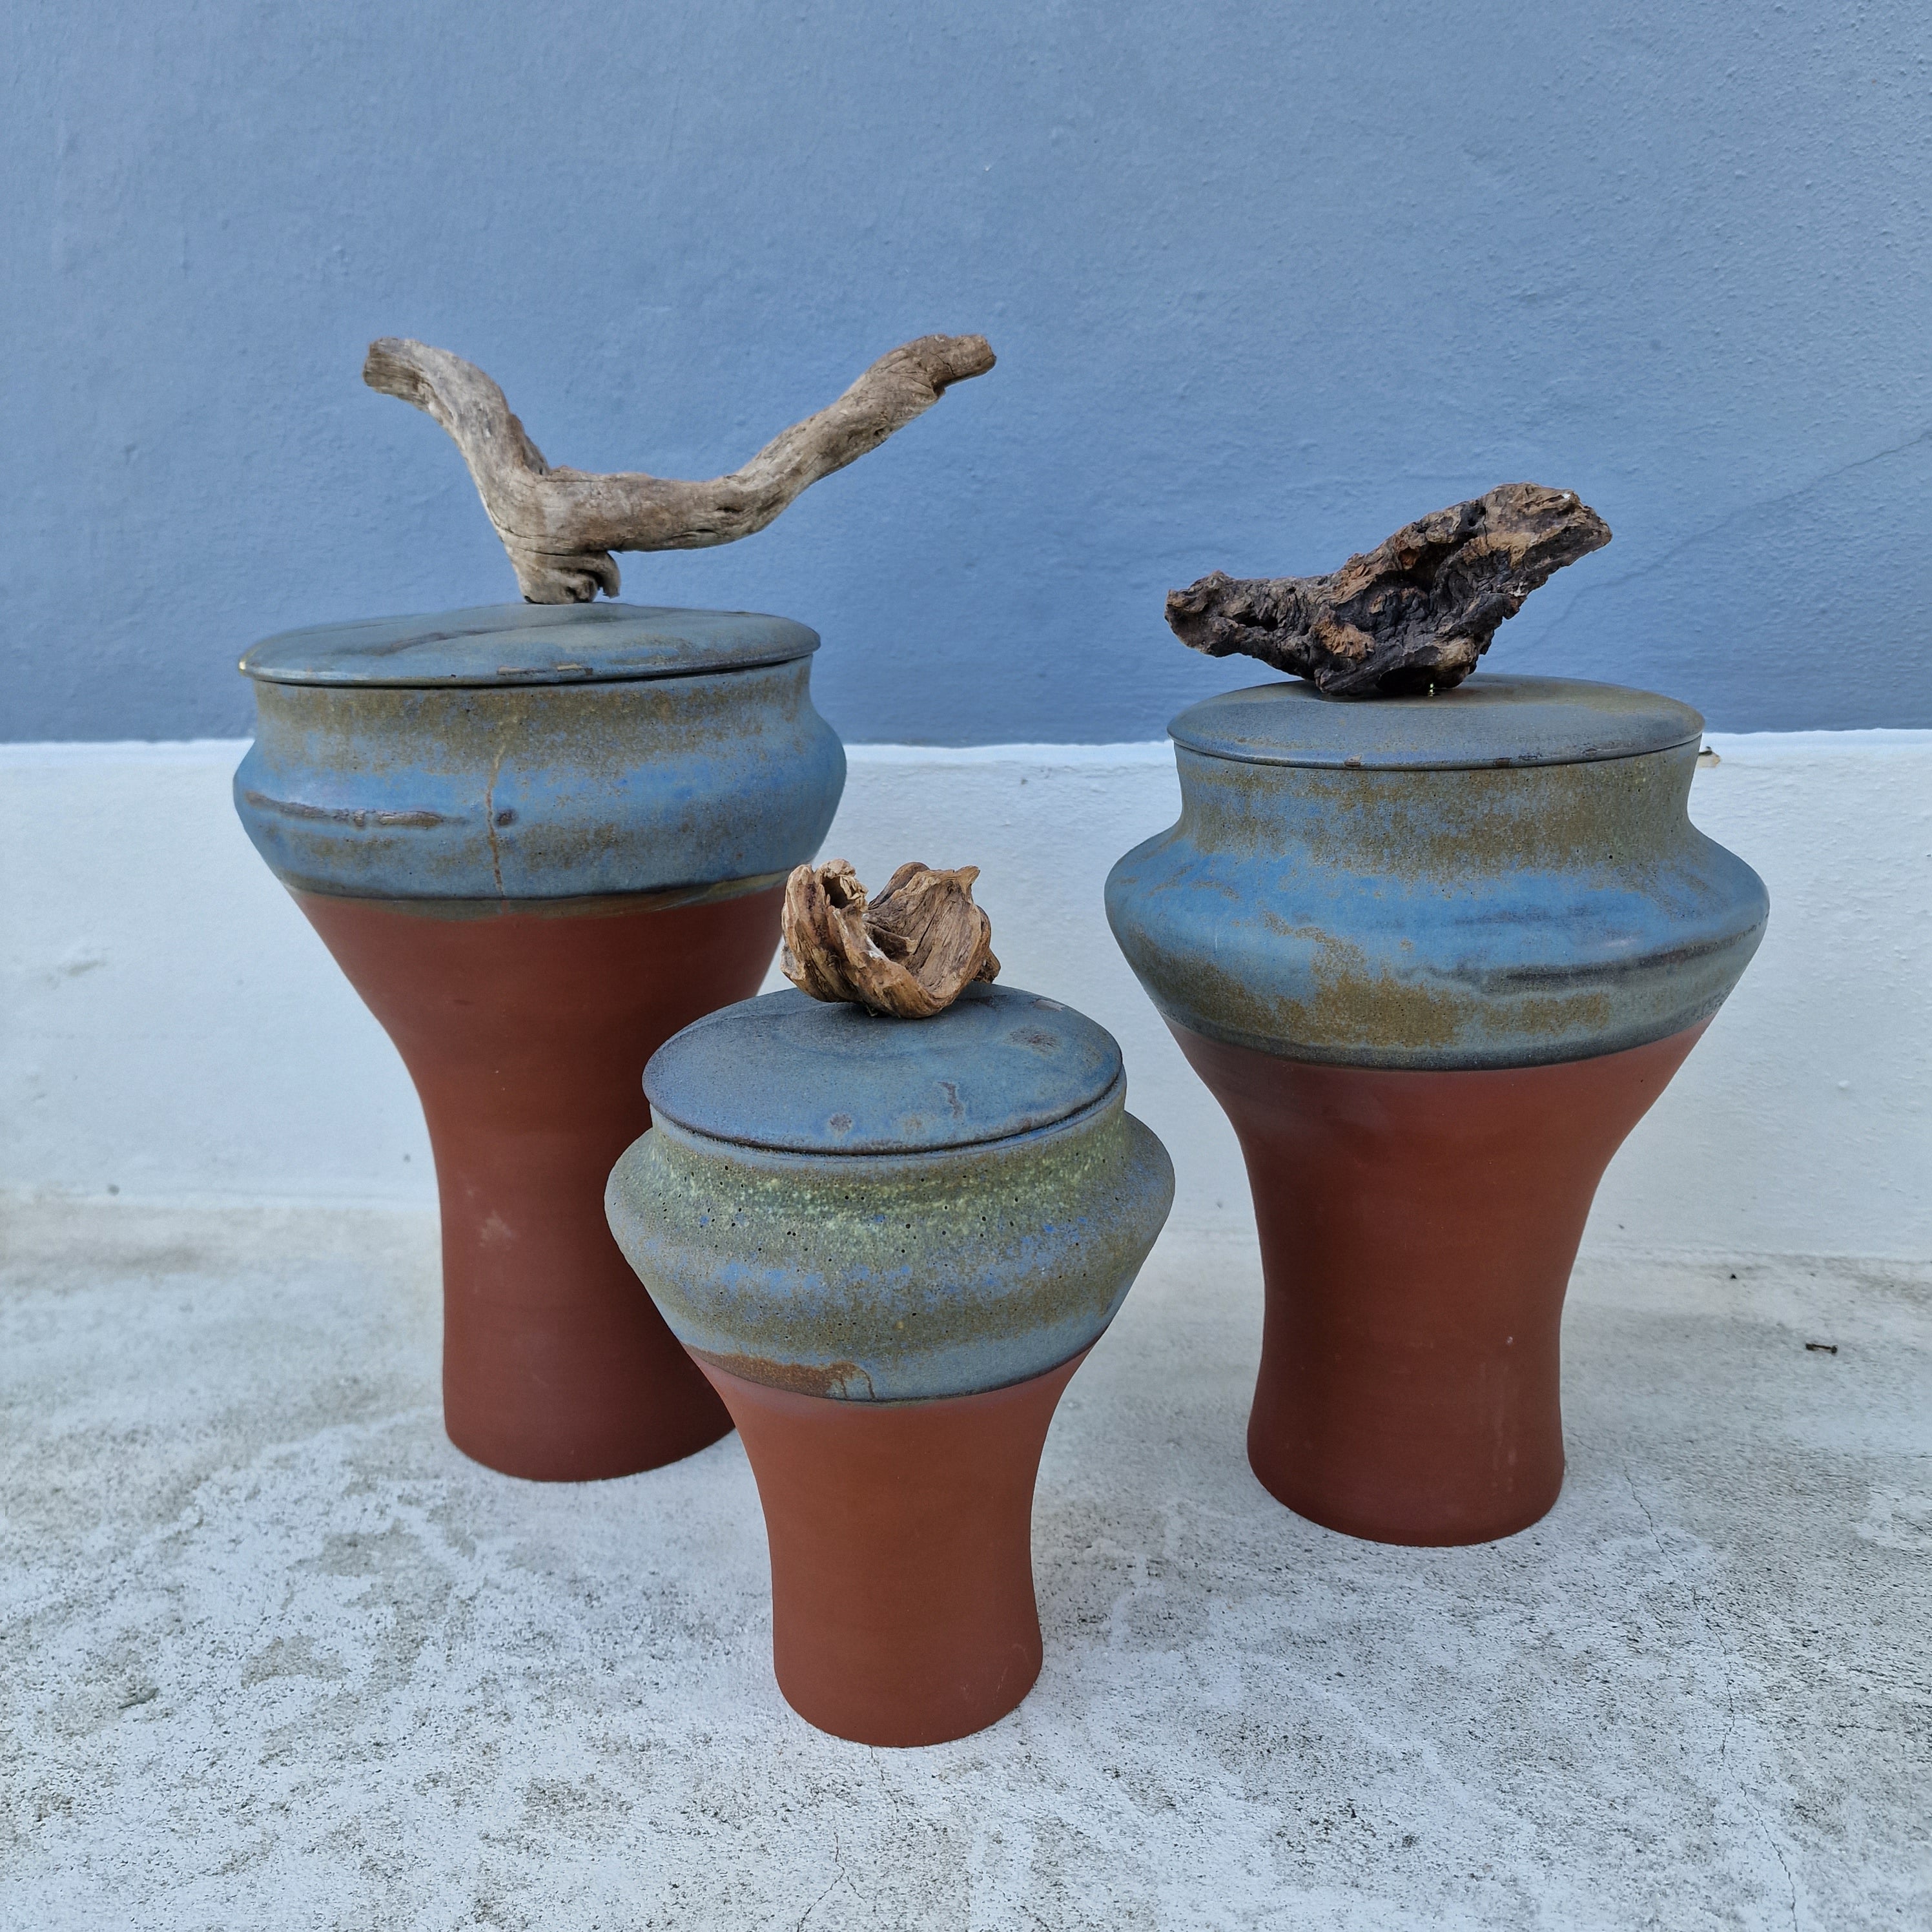 Terracotta Urn for ashes | Wood handle Urn | Unique Ceramic Urn | Artistic design Urn | Handmade Urn for pet or Human | One of a kind Vase